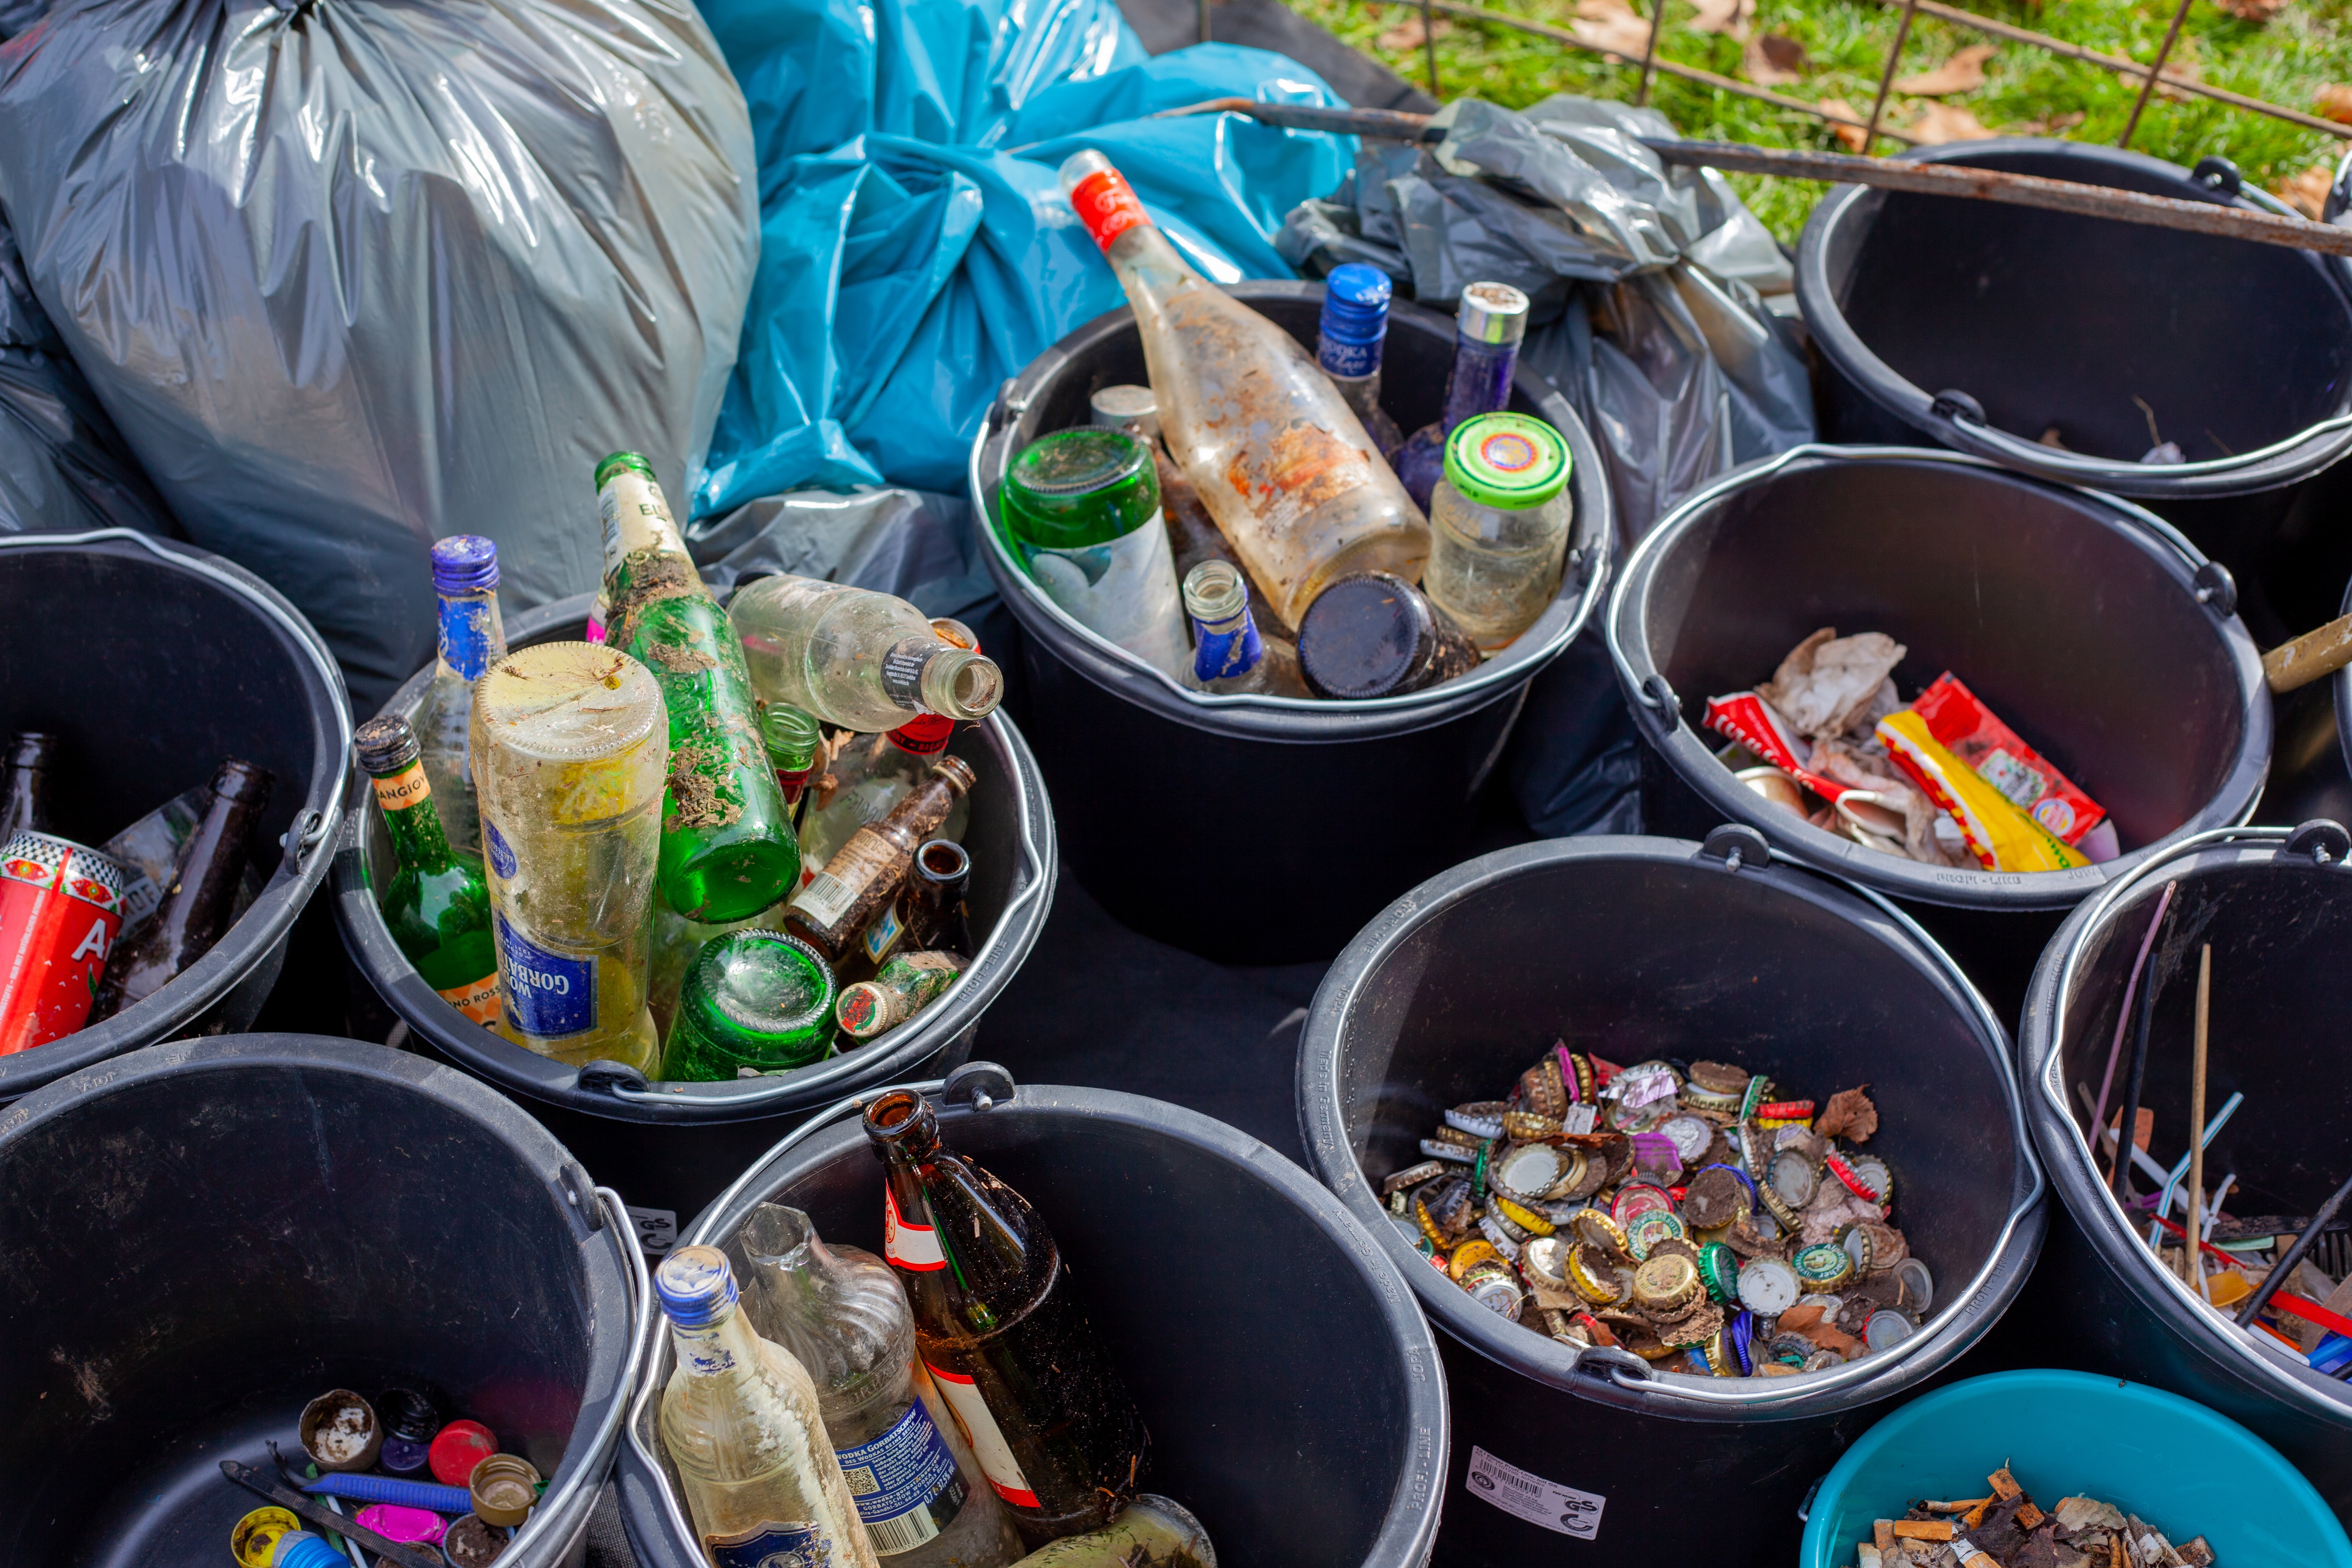 Aprender a desechar adecuadamente sus residuos sólidos puede contribuir a promover el cuidado del medio ambiente. (Foto Prensa Libre: Unsplash)